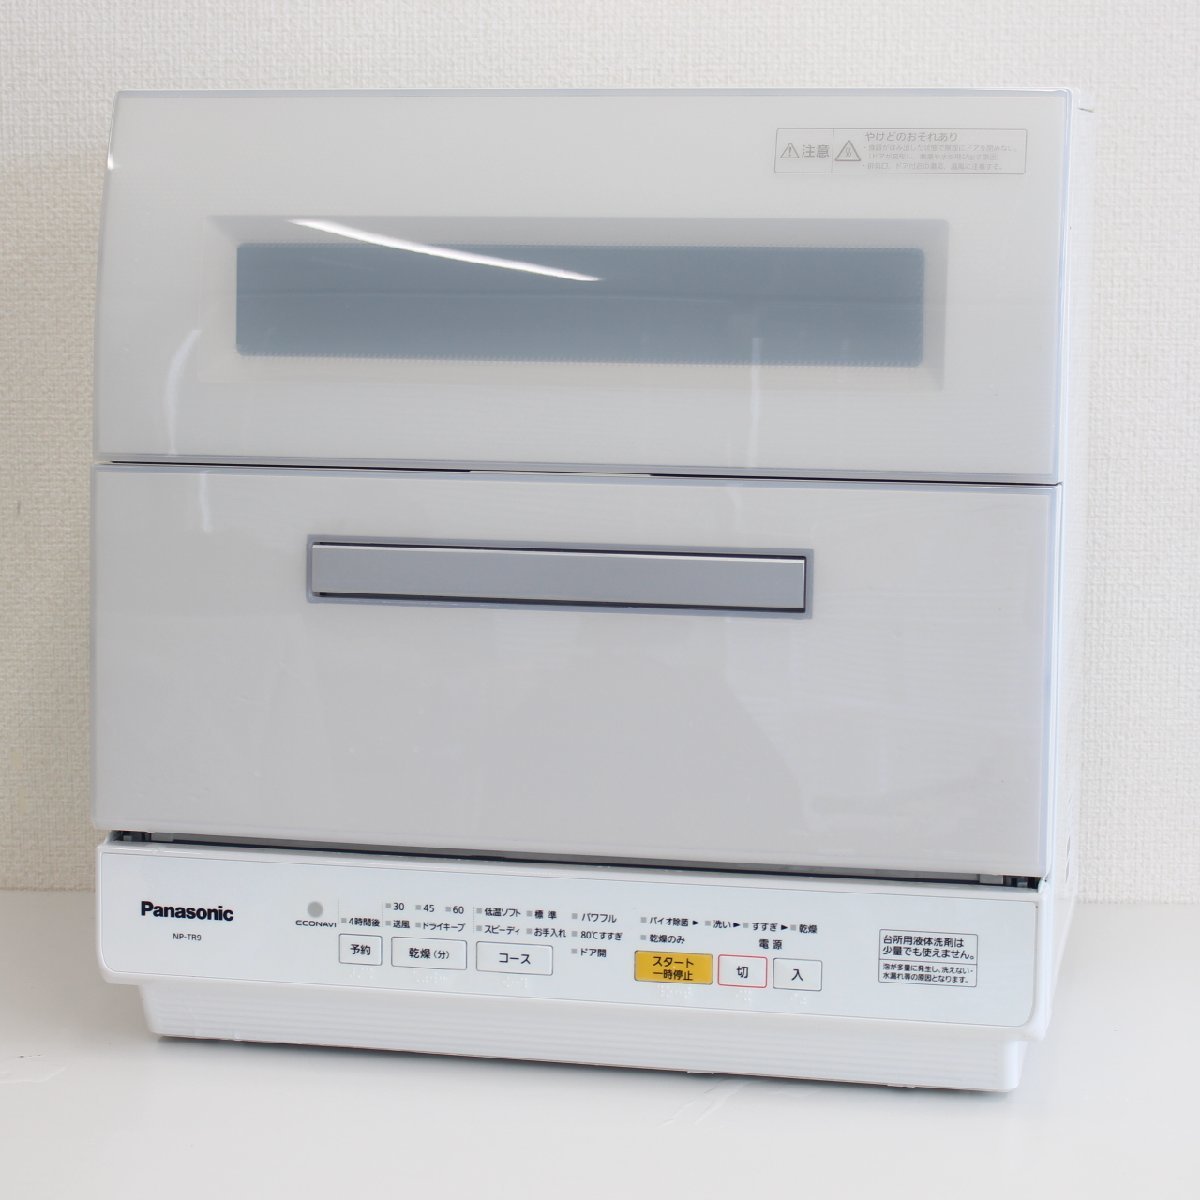 東京都渋谷区にて パナソニック  食器洗い乾燥機 NP-TR9-W 2016年製 を出張買取させて頂きました。